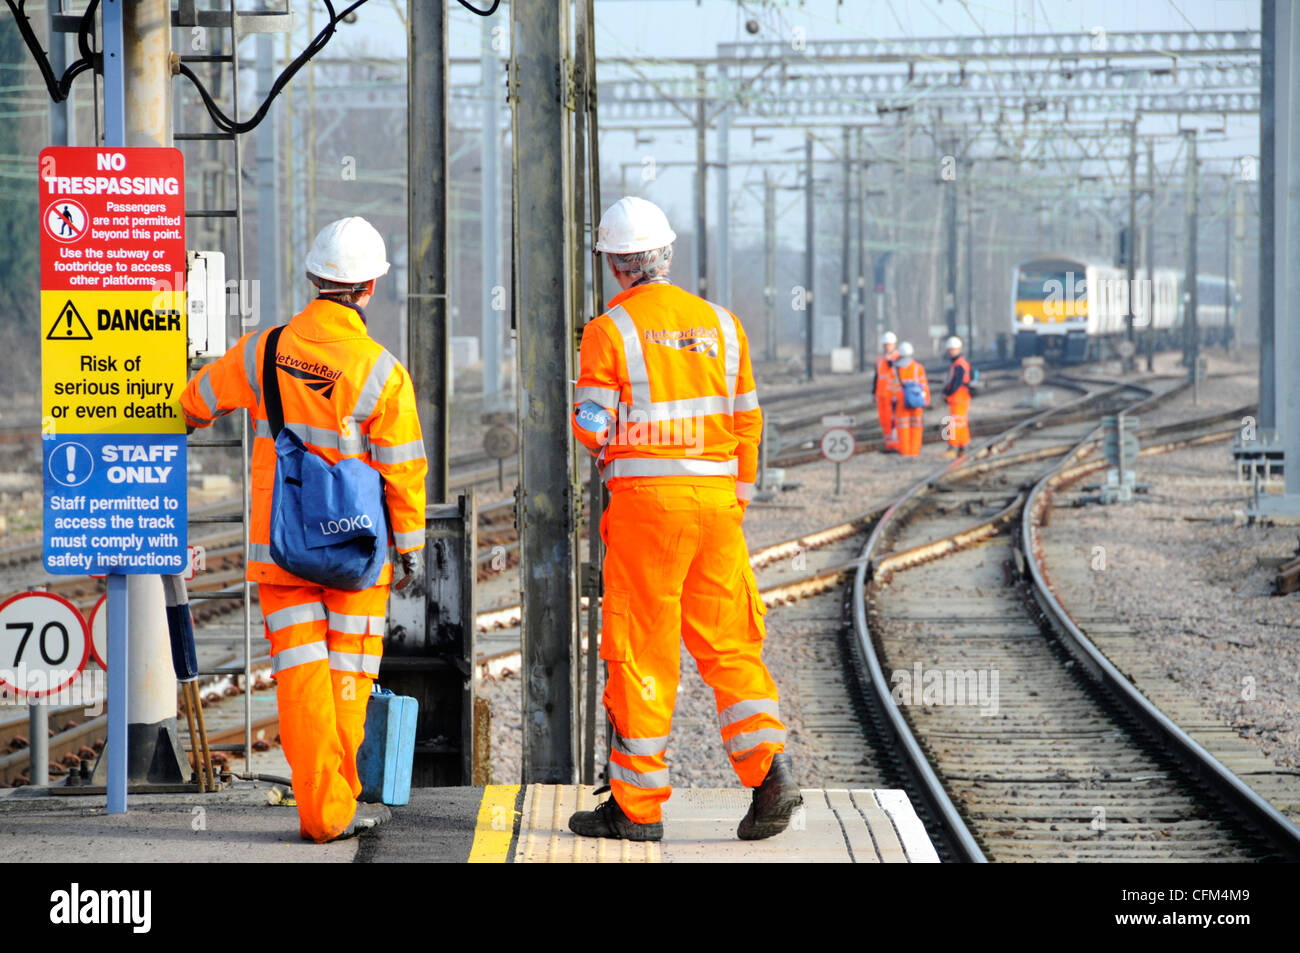 Sign & back view Network Rail Arbeiter hohe vis Jacke & Hut auf Bahnsteig Gruppe von Arbeitern auf Tracks jenseits Zug entfernt Essex England Großbritannien Stockfoto